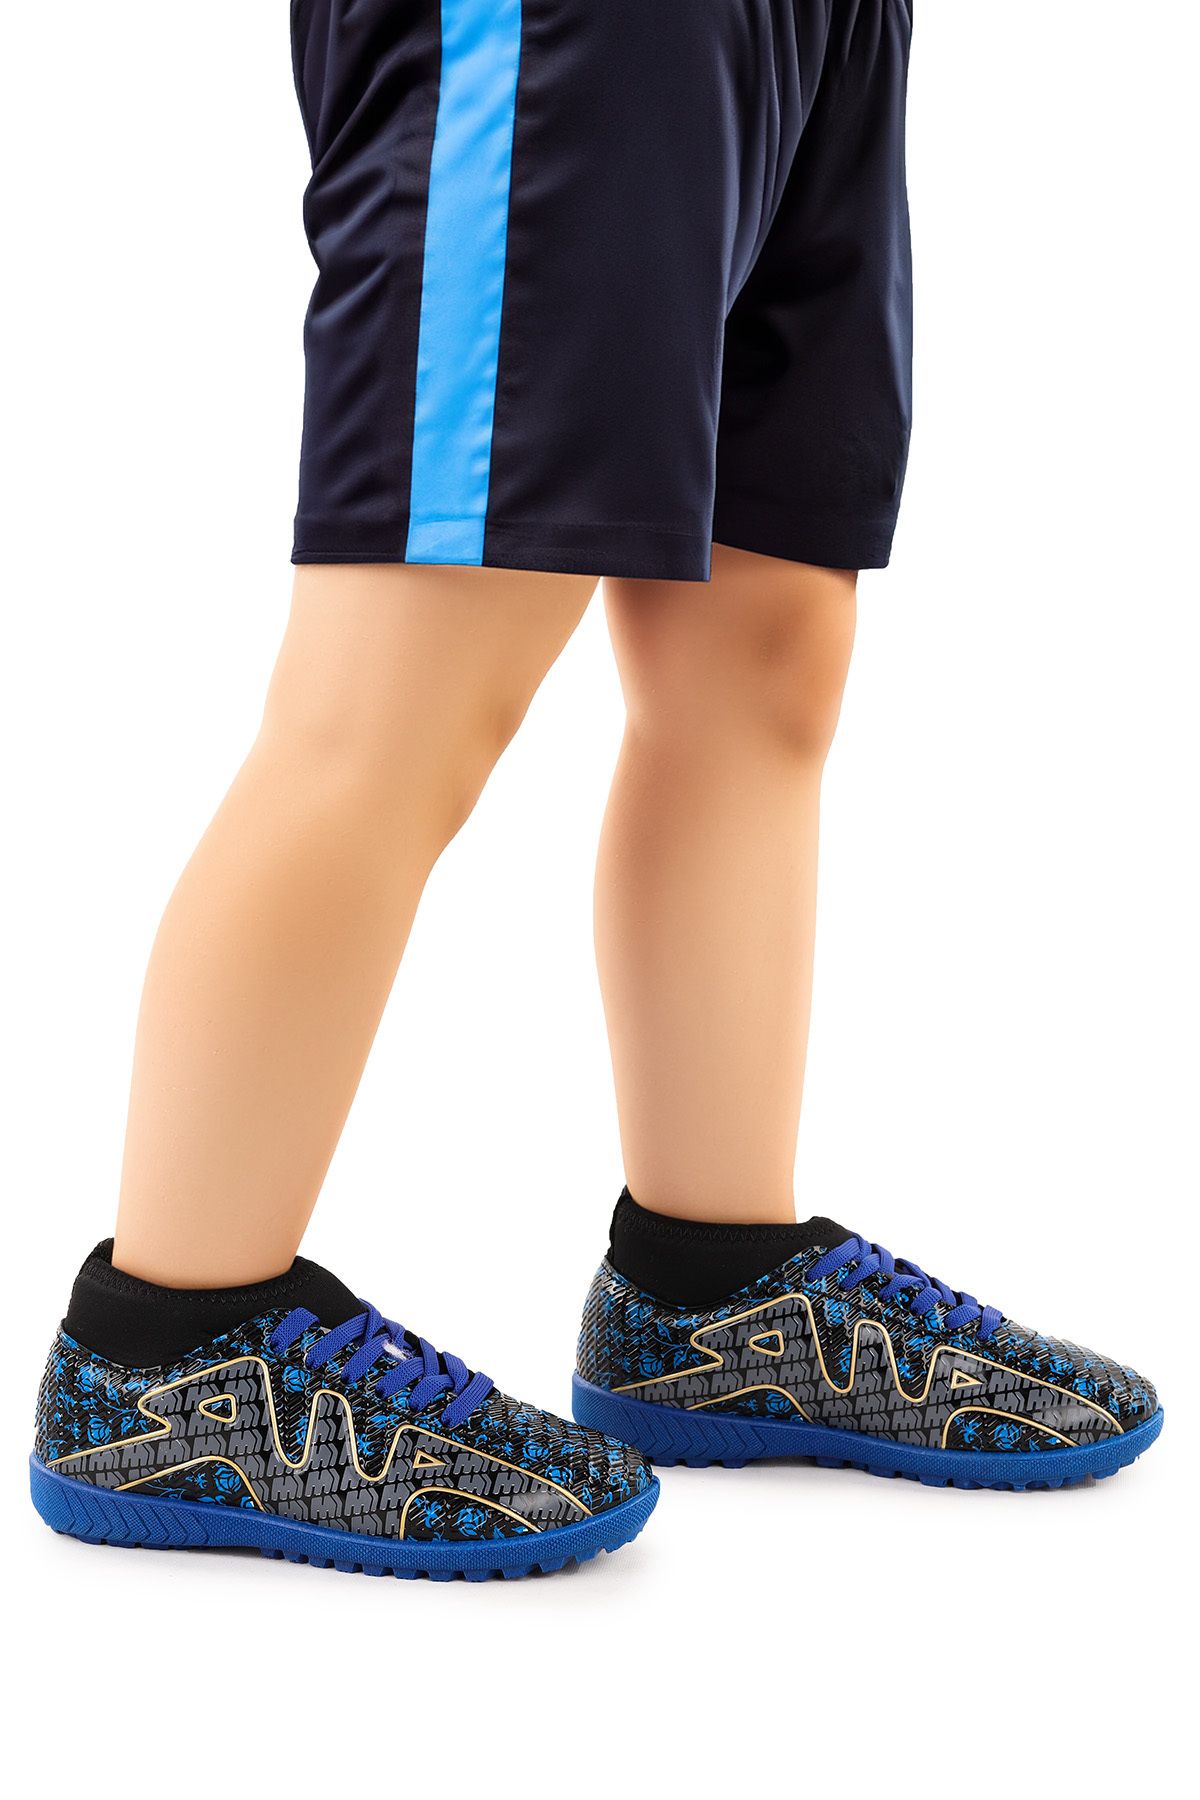 Kiko Kids Sumpa Boğazlı Halı Saha Erkek Çocuk Futbol Ayakkabı